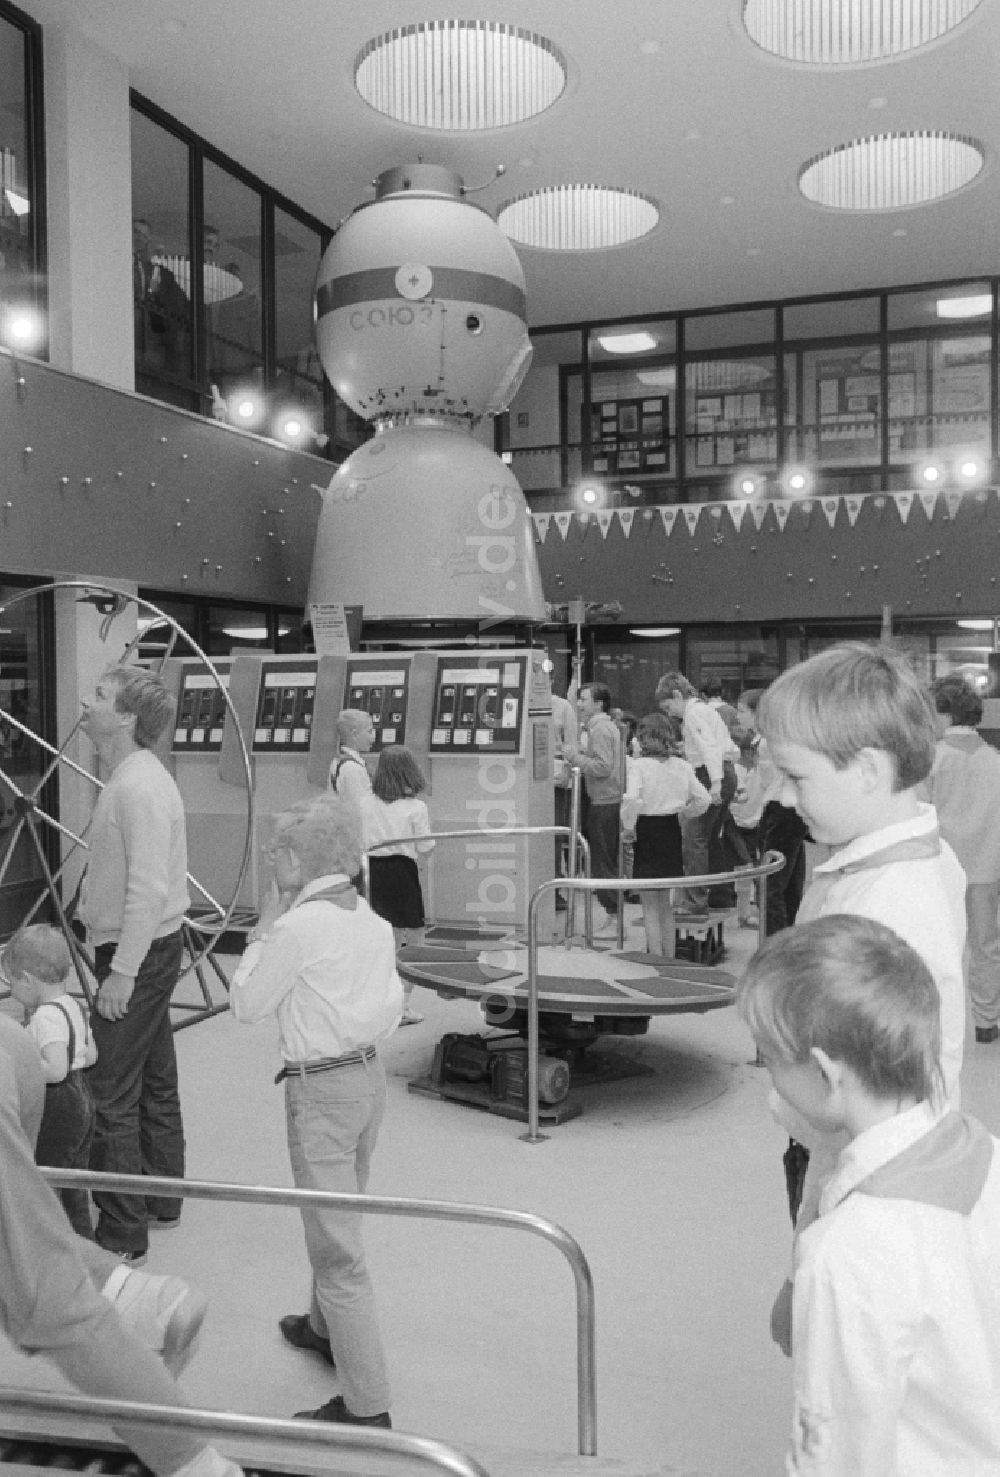 DDR-Bildarchiv: Berlin - Das Raumfahrtzentrum „Orbitall“ im FEZ Wuhlheide in Berlin, der ehemaligen Hauptstadt der DDR, Deutsche Demokratische Republik